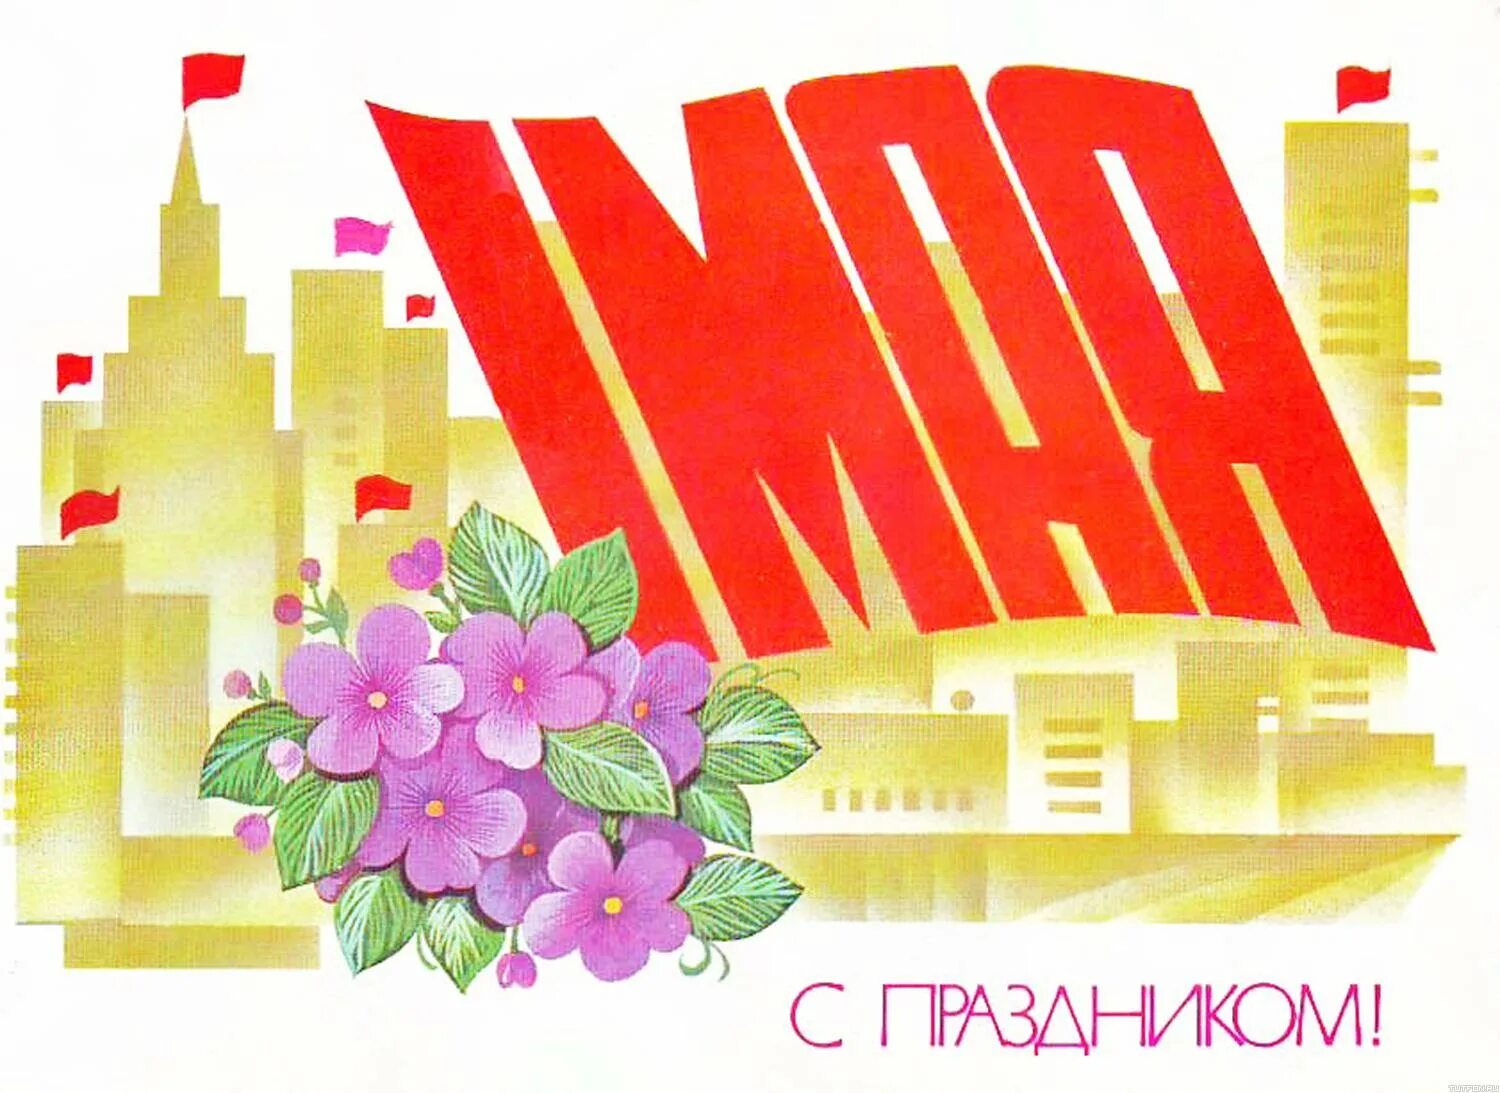 Старые открытки с 1 мая. Открытки с 1 мая. Советские открытки с 1 мая. 1 Мая праздник плакат. Мир труд май открытка.